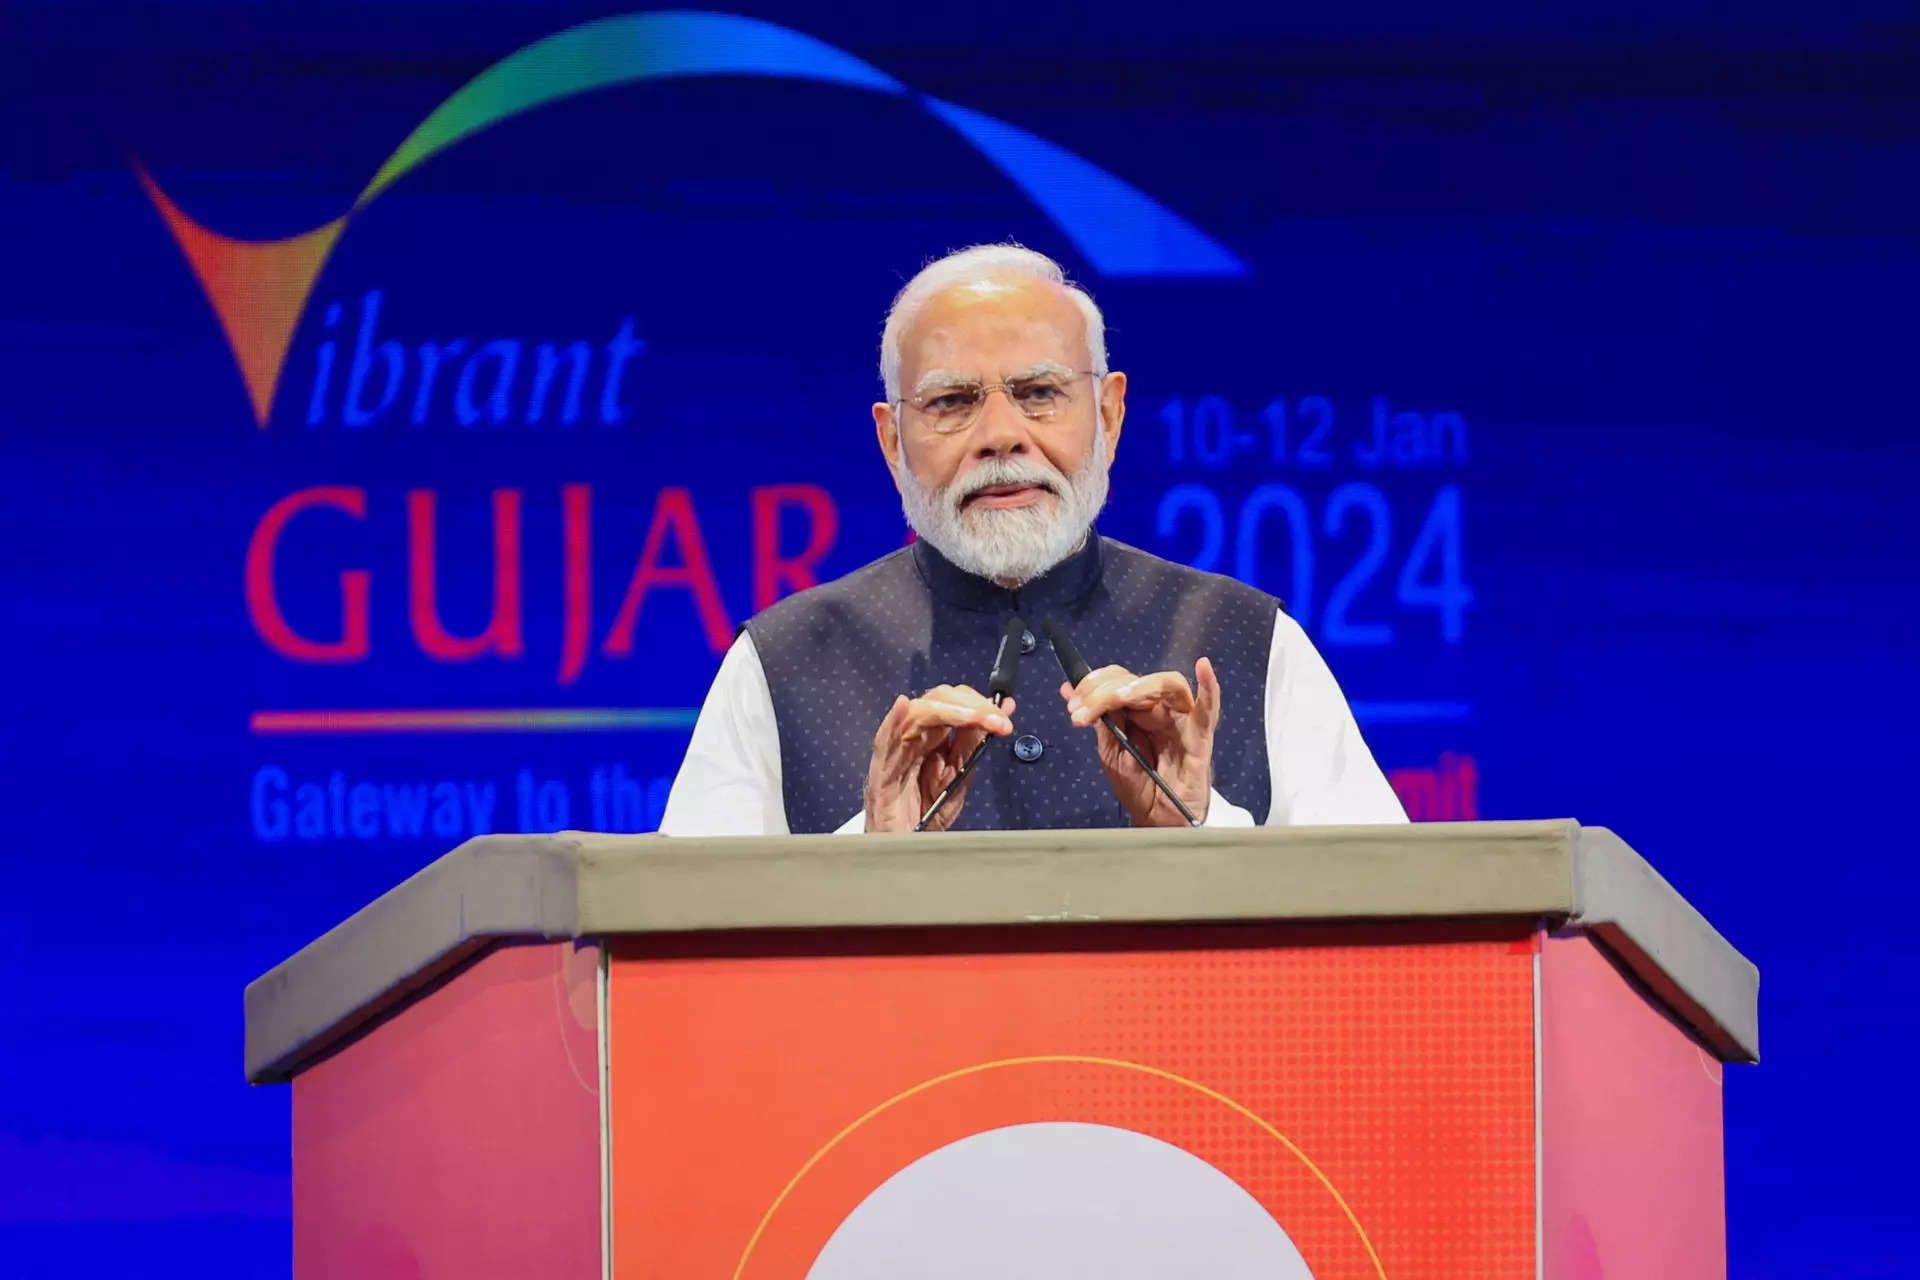 Vibrant Gujarat Global Summit, in Gandhinagar